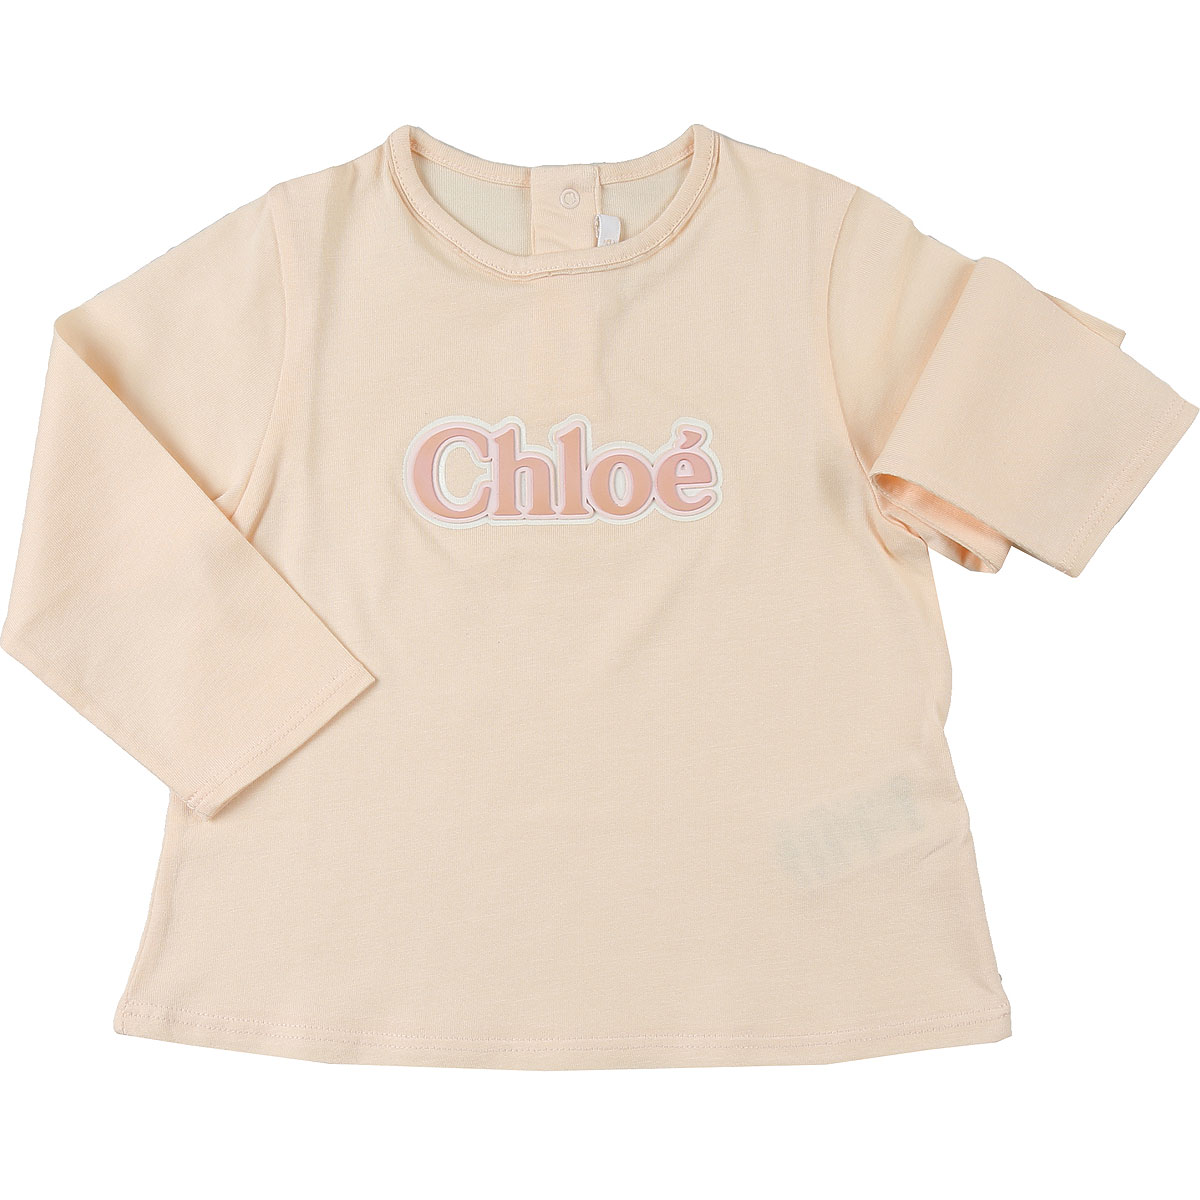 Chloe Baby T-Shirt für Mädchen Günstig im Sale, Hellpink, Baumwolle, 2017, 12M 18M 2Y 3Y 9M